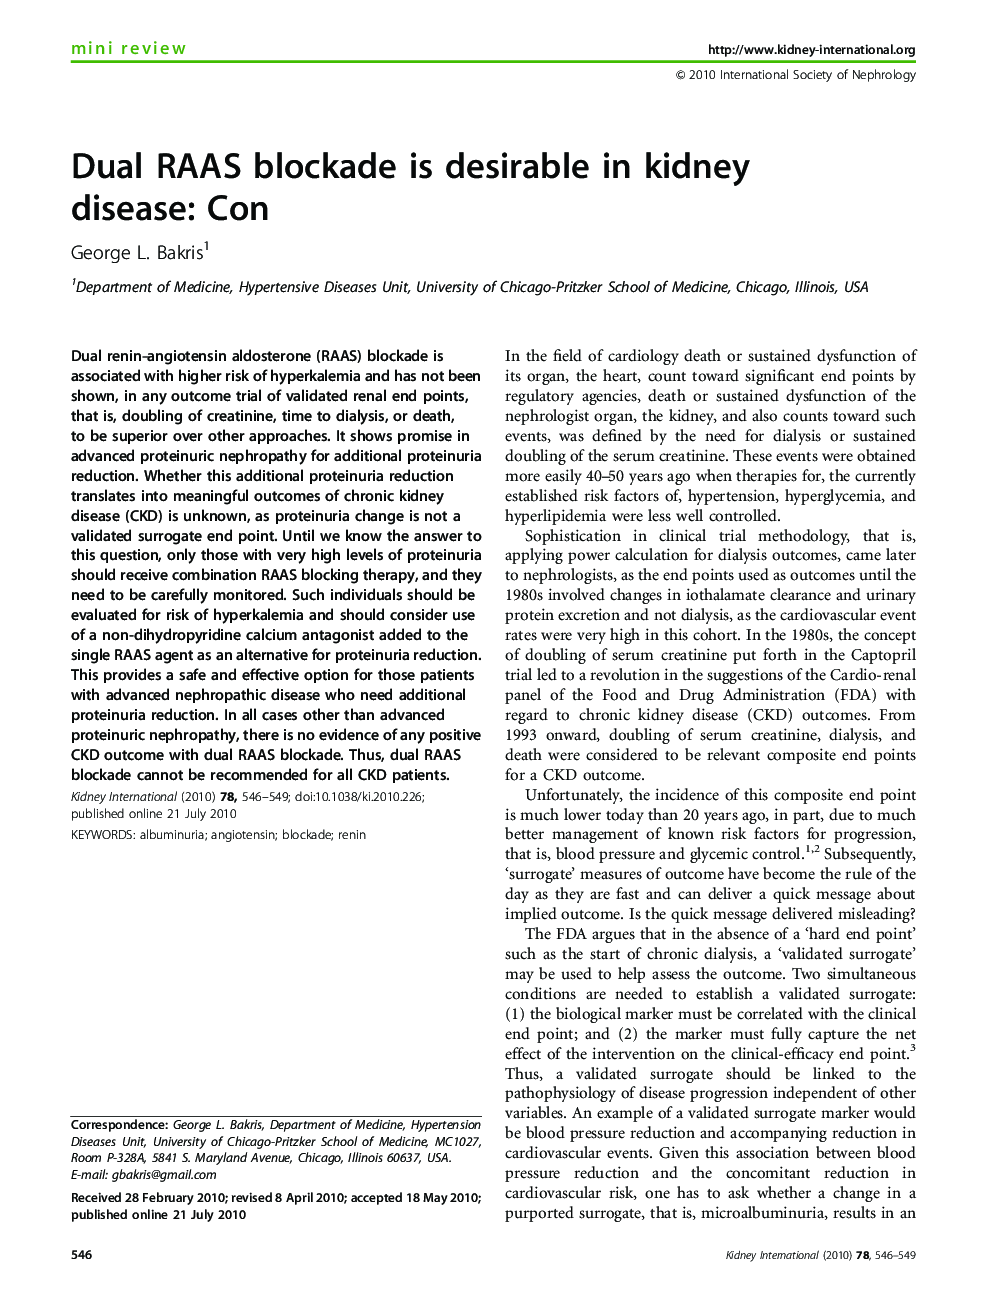 Dual RAAS blockade is desirable in kidney disease: Con 